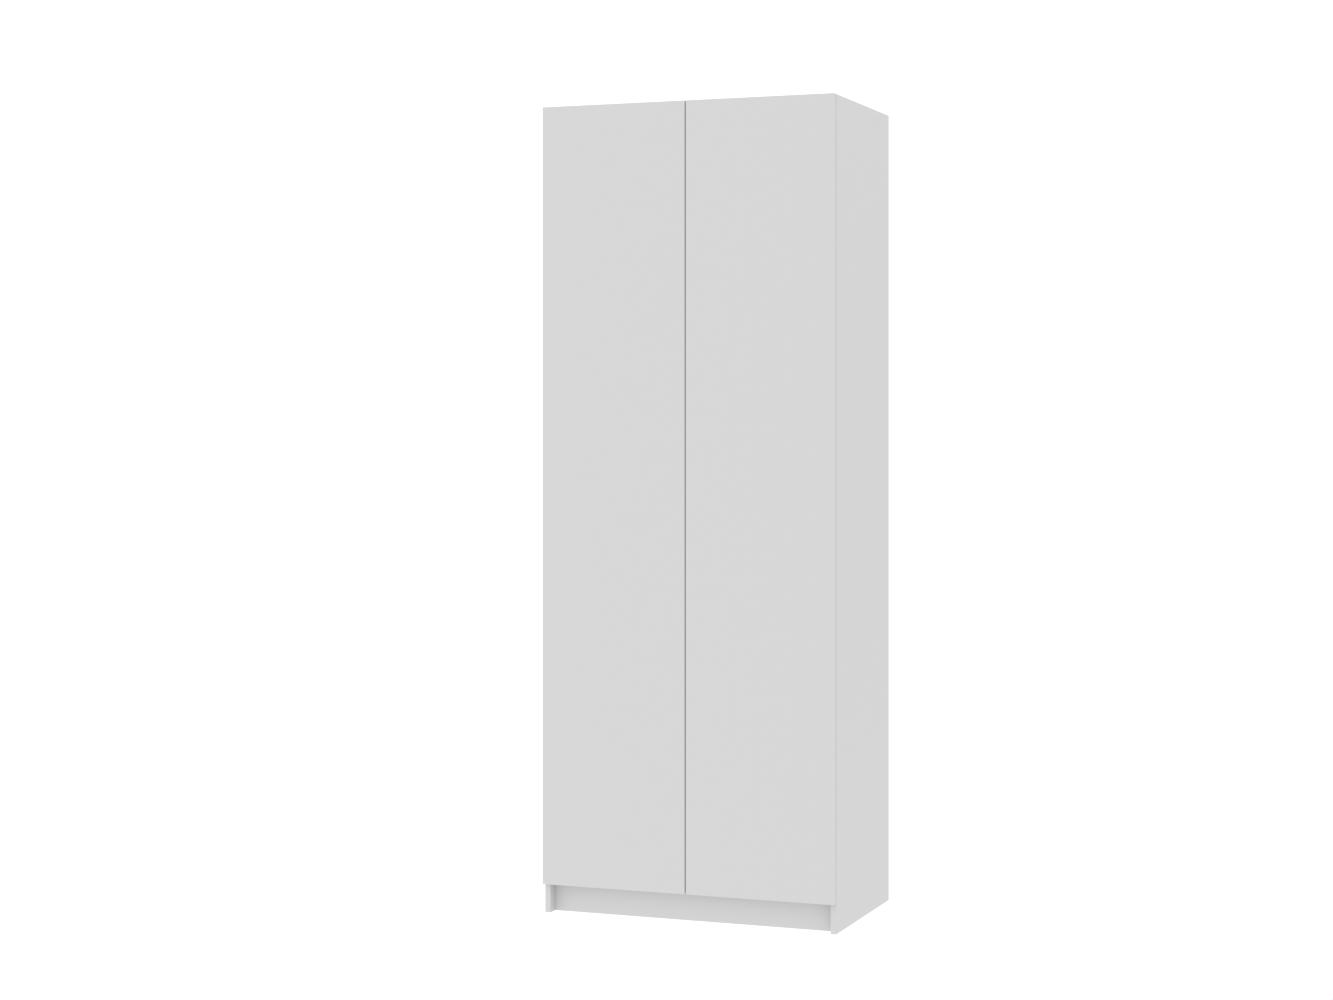 Распашной шкаф Пакс Форсанд 14 white ИКЕА (IKEA) изображение товара